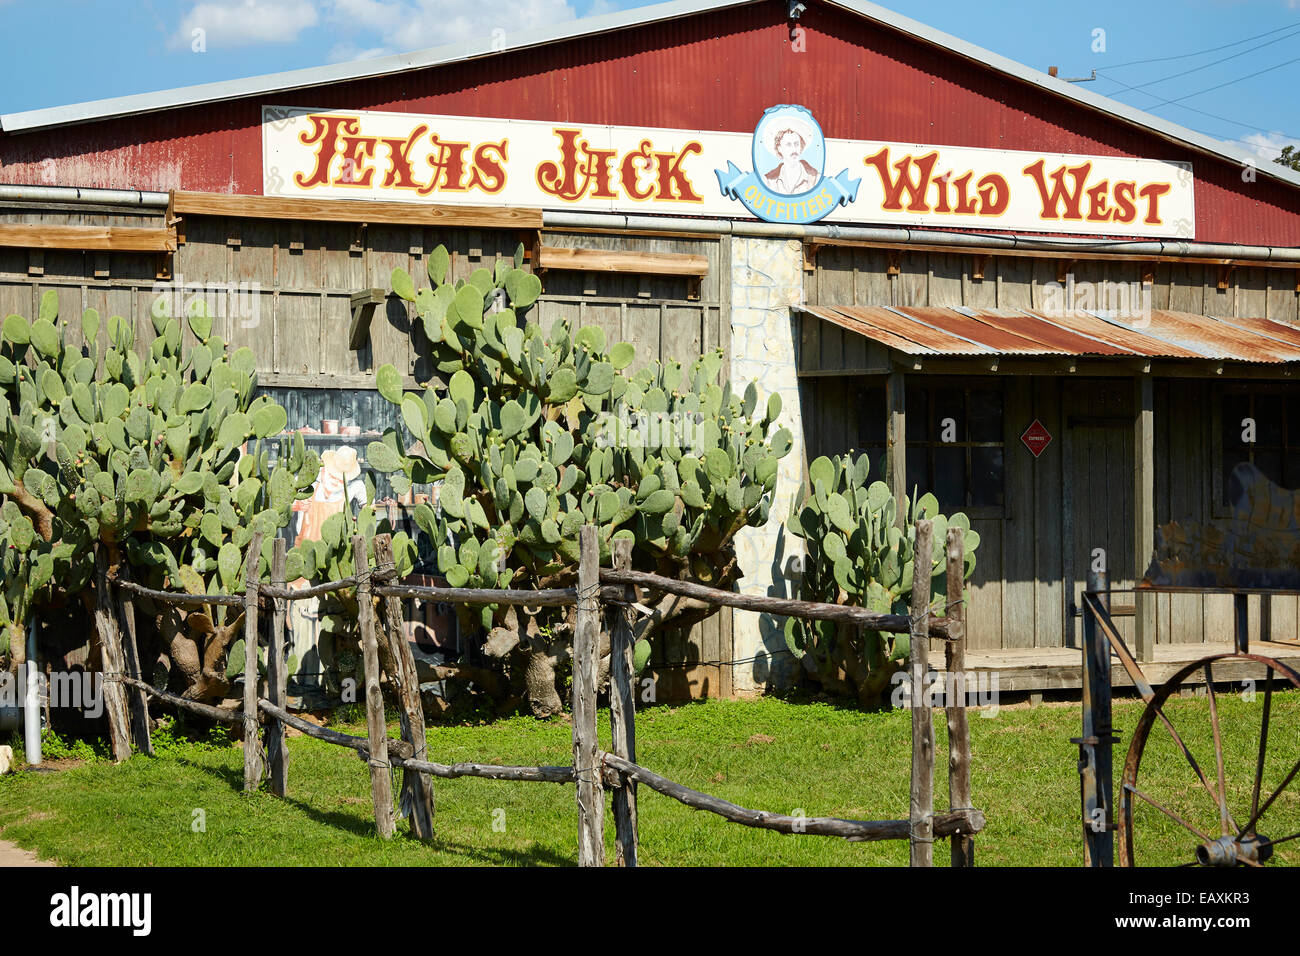 Texas Jack Wild West store, Fredericksburg, Texas, USA Stock Photo